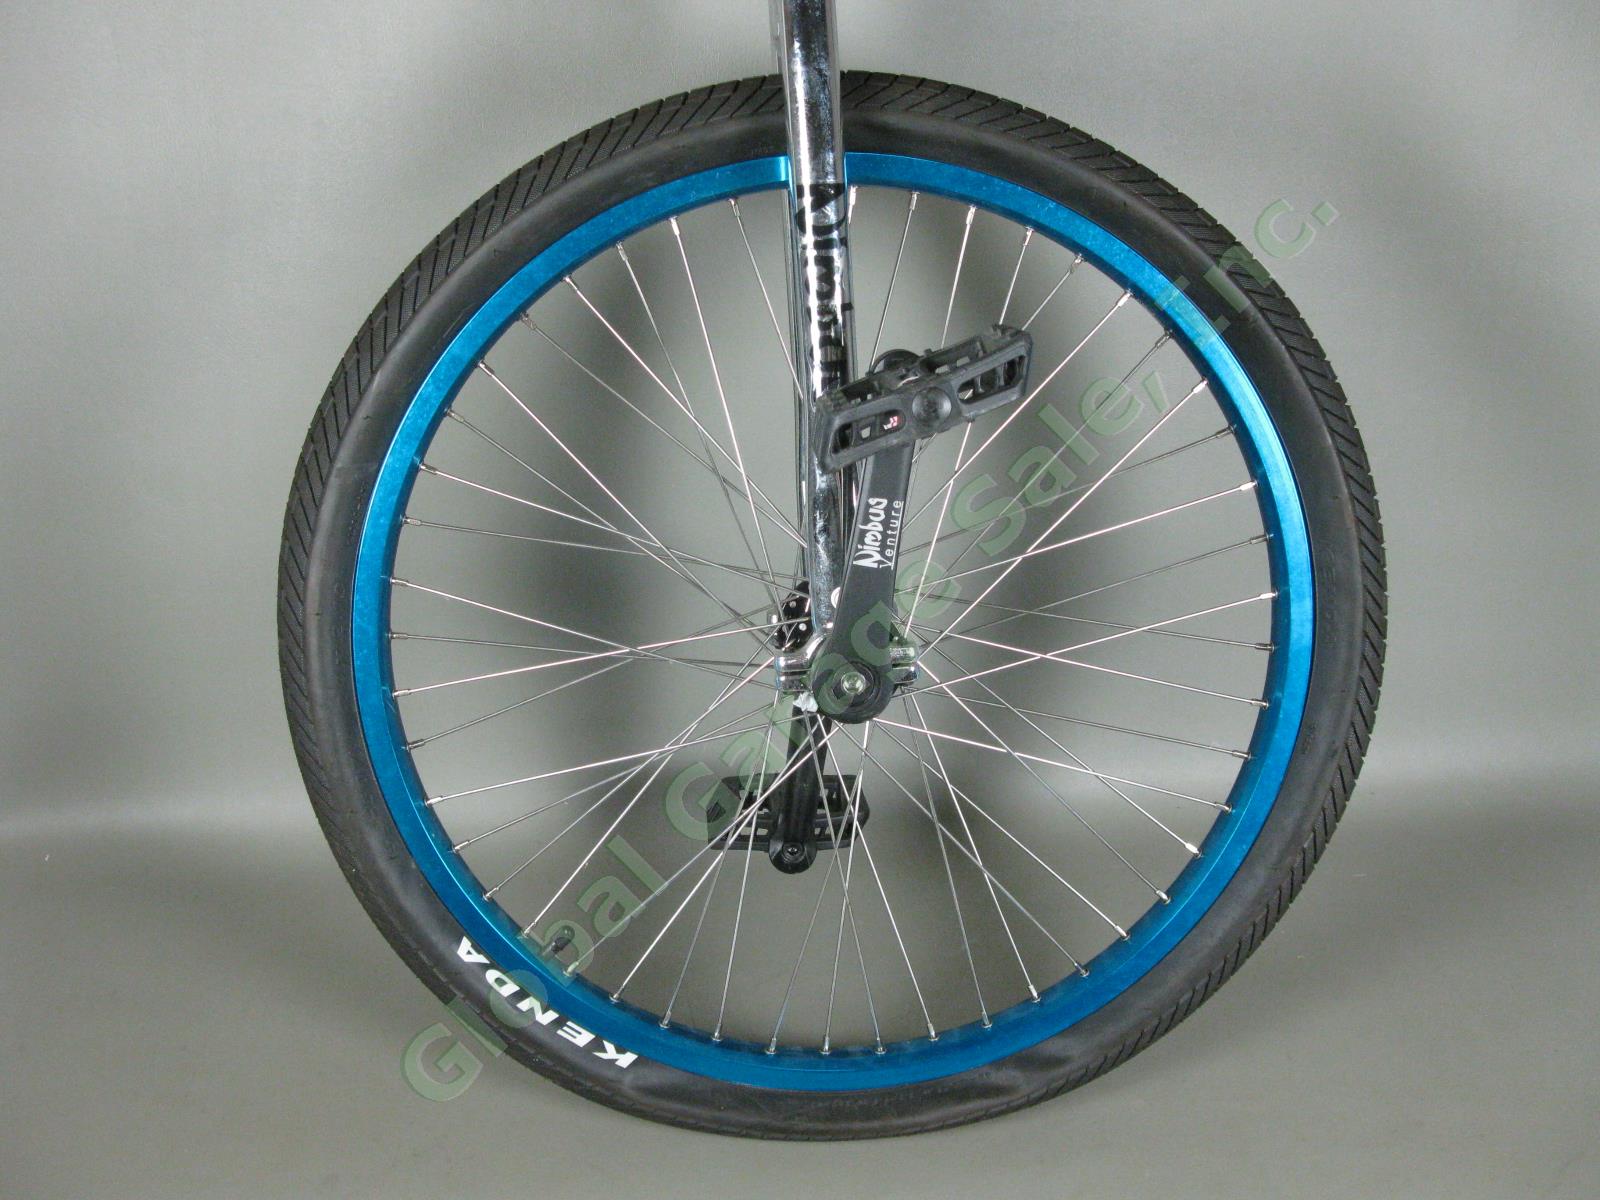 24" Nimbus Unicycle Kris Holm Saddle Seat FS2432 Rim Kenda 54-507 Tire Exc Cond 3